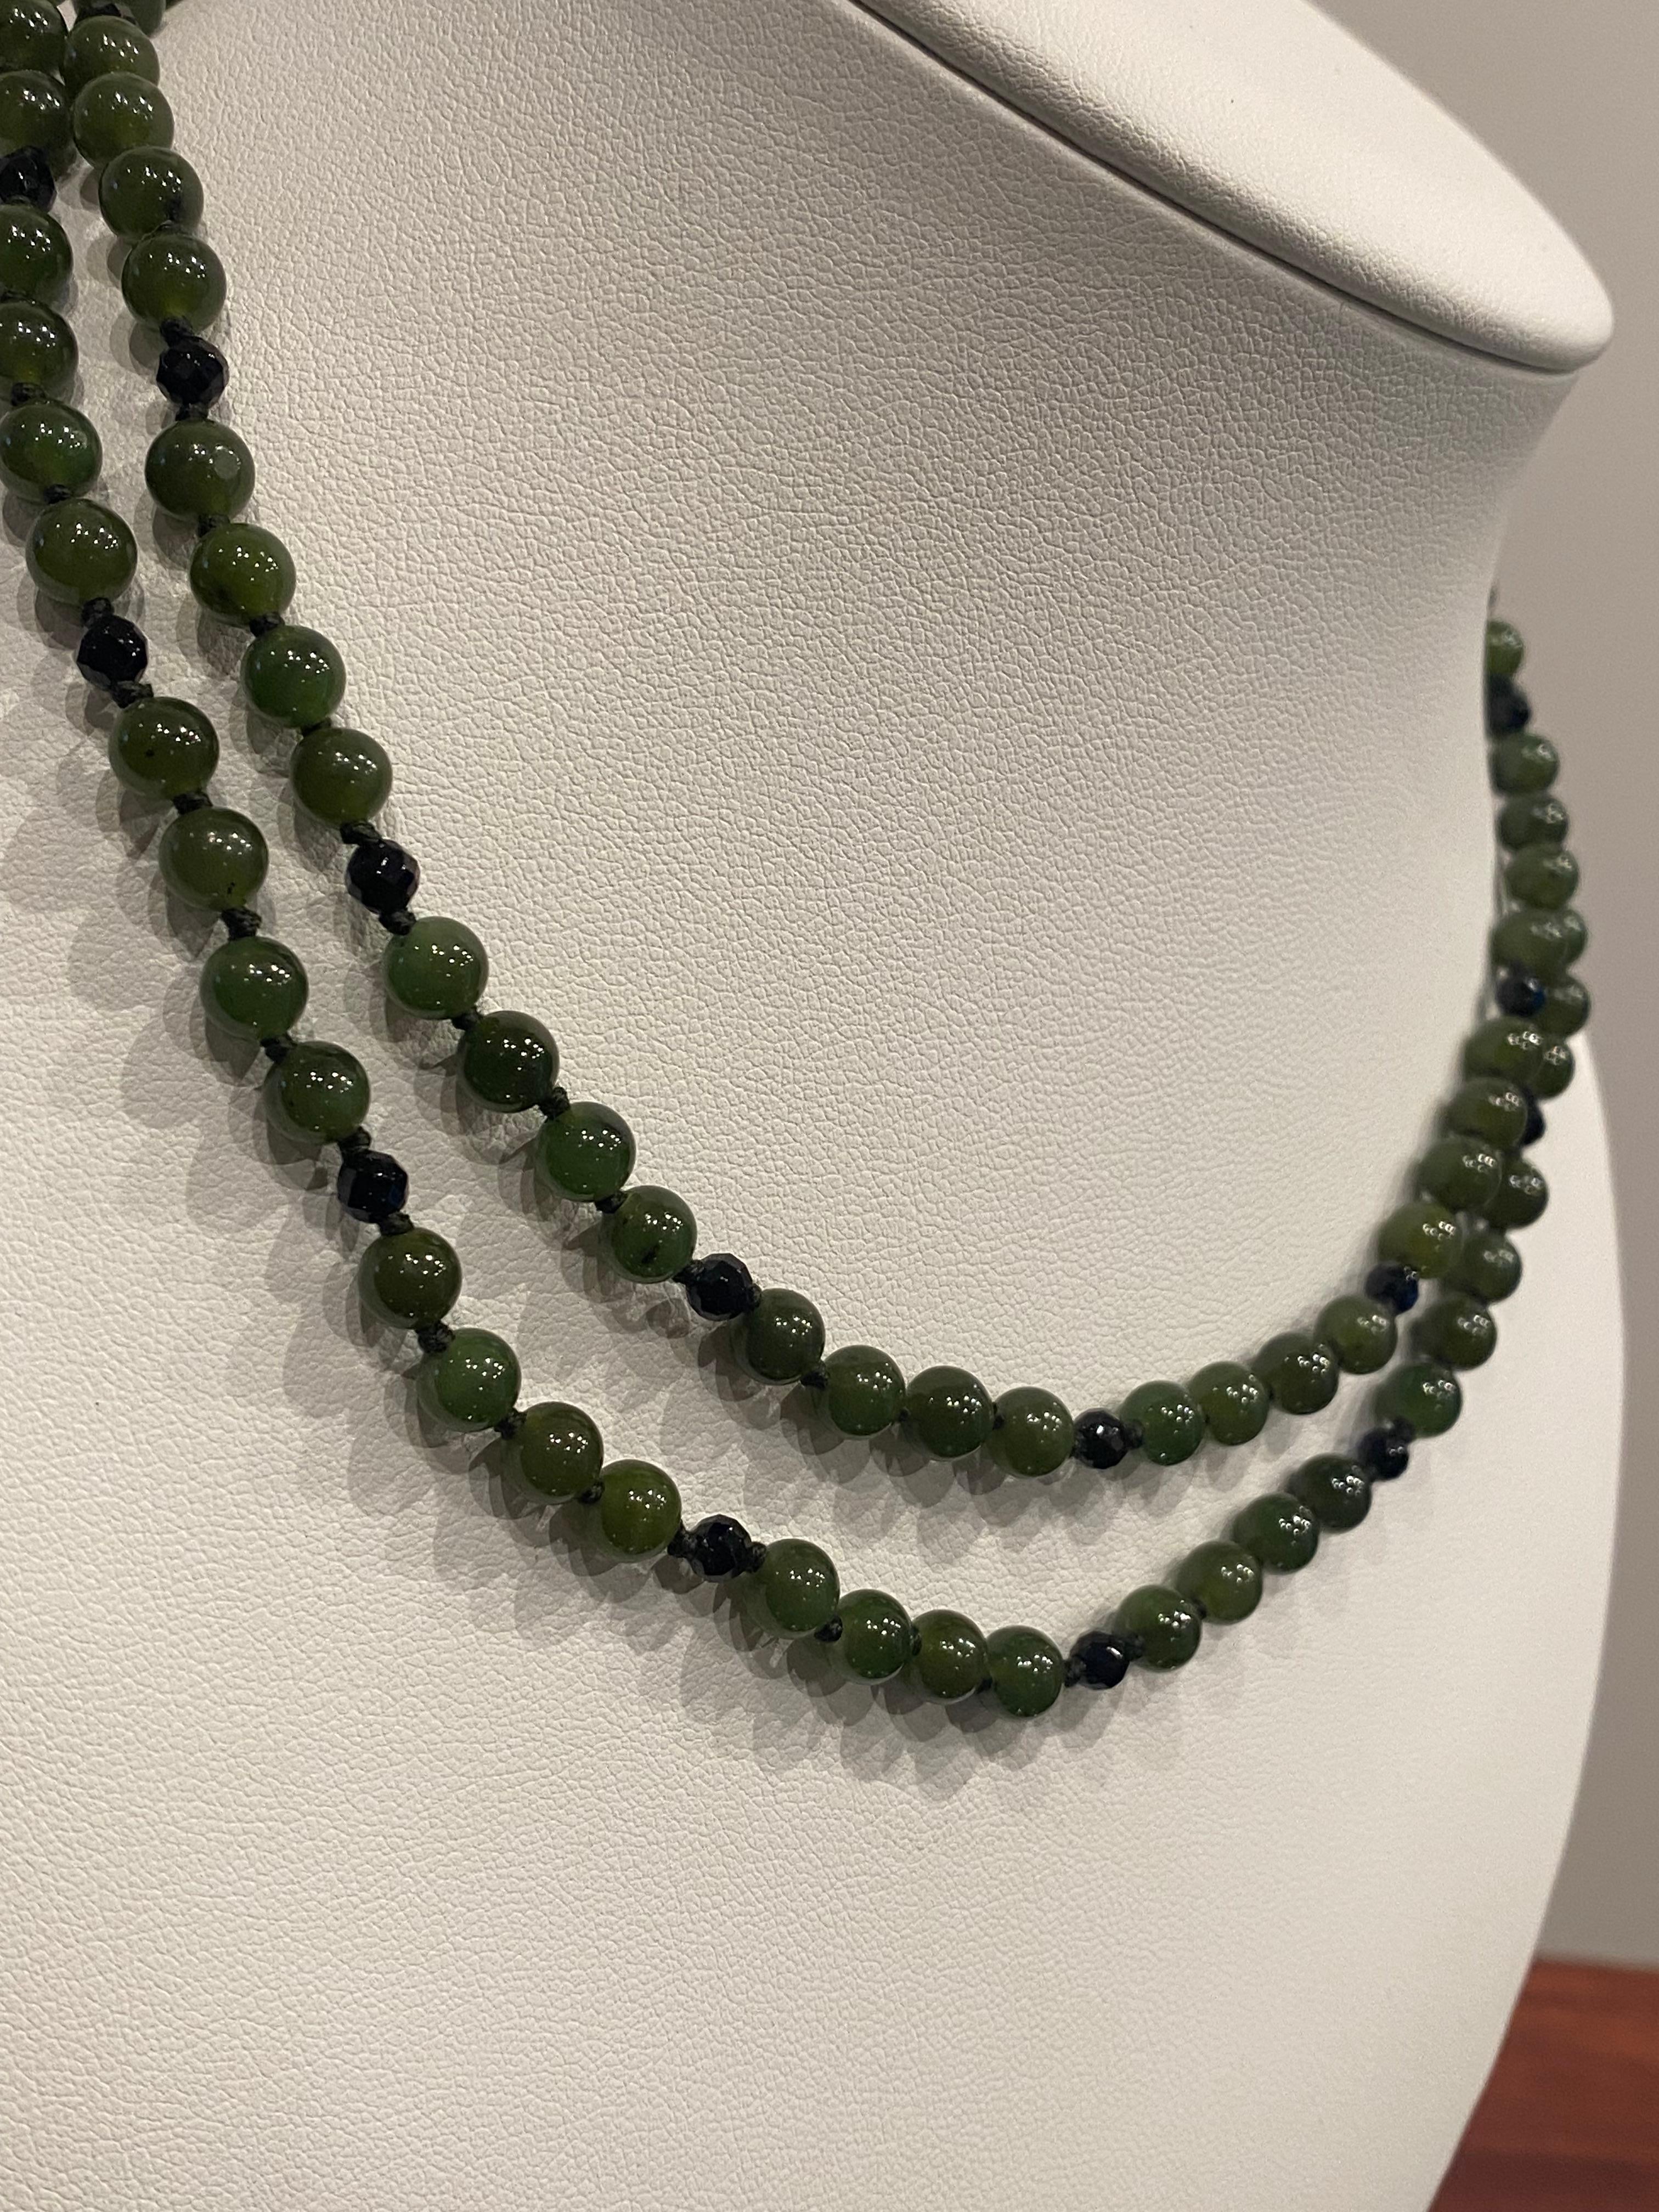 Composé de produits fins et bien assortis 
Perles de Jadéite Naturelle de 7mm chacune 
d'un vert profond et intense

Les sections de 4 sont séparées par 
perles d'onyx noir à facettes,
créer un look élégant 

Le tout est complété par un fermoir